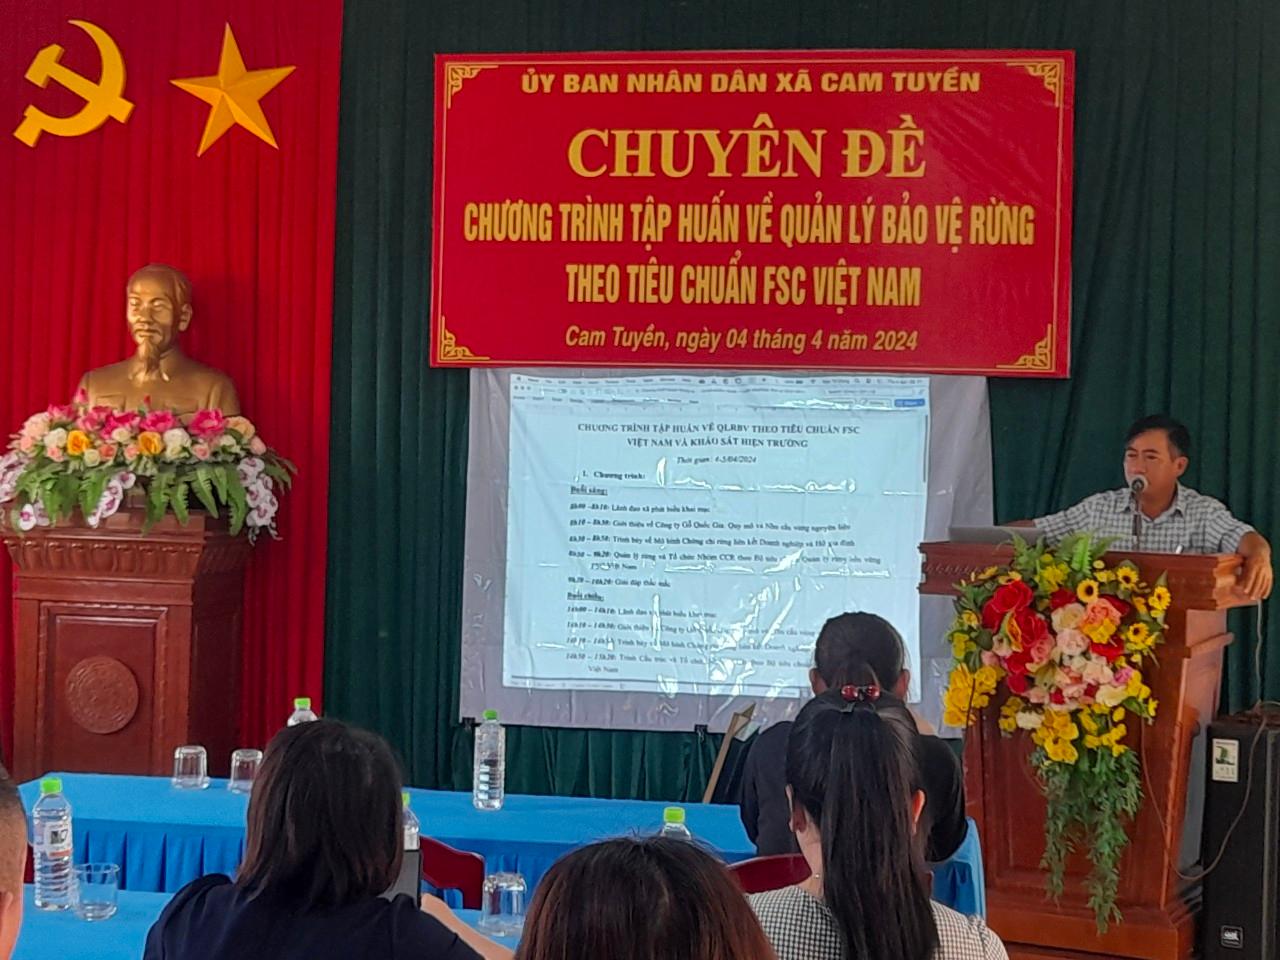 Tập huấn về quản lý, bảo vệ rừng theo tiêu chuẩn FSC Việt nam